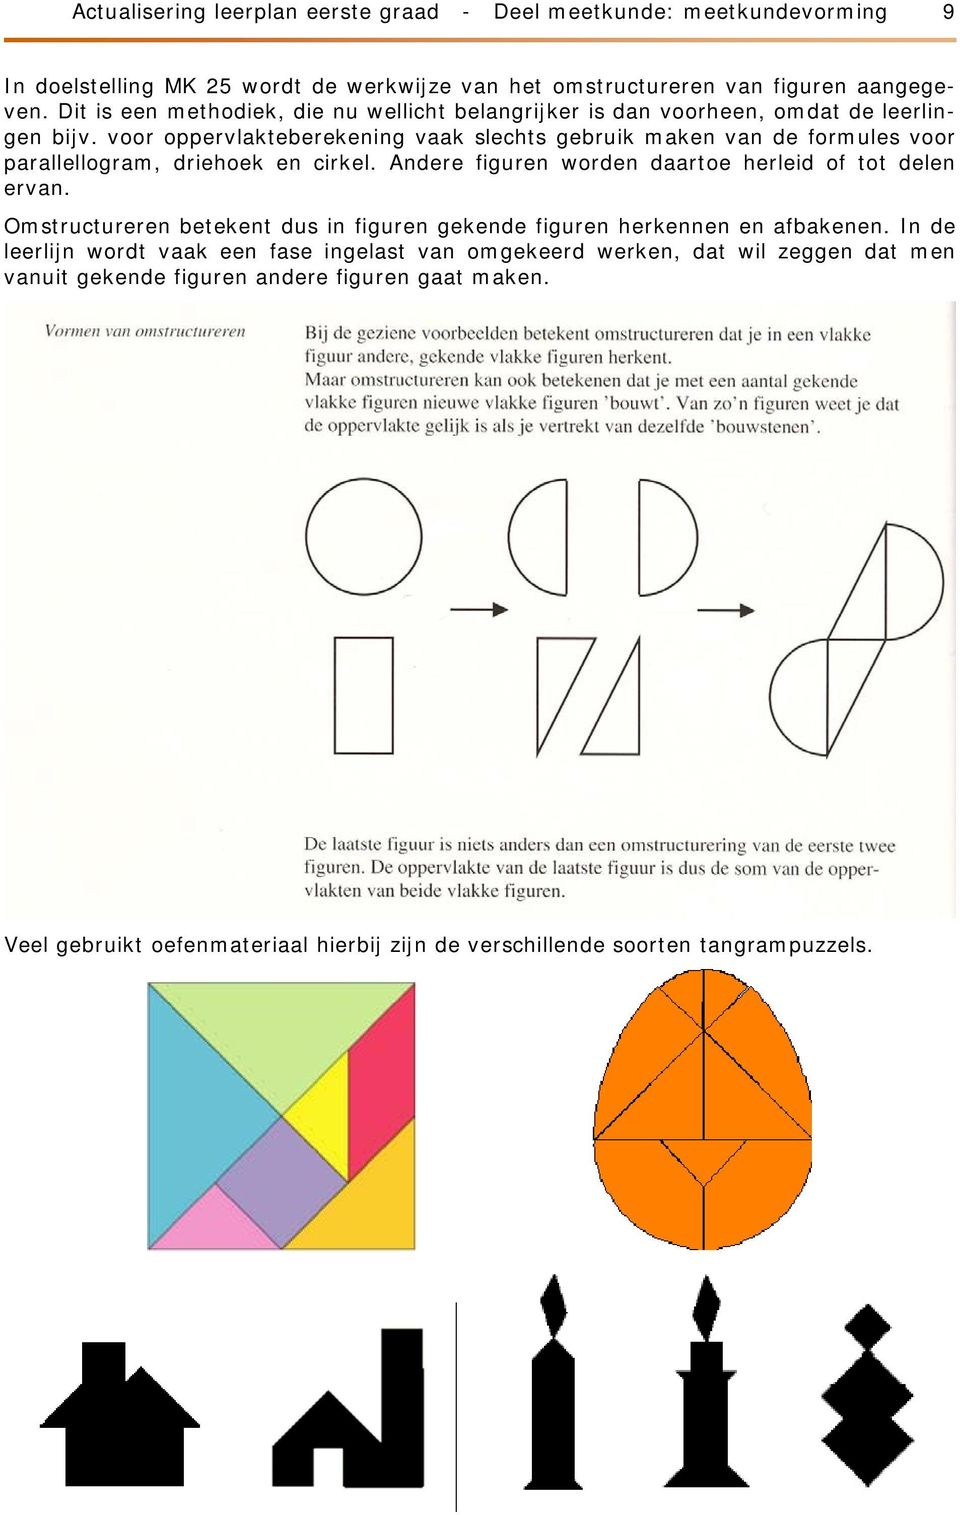 voor oppervlakteberekening vaak slechts gebruik maken van de formules voor parallellogram, driehoek en cirkel. Andere figuren worden daartoe herleid of tot delen ervan.